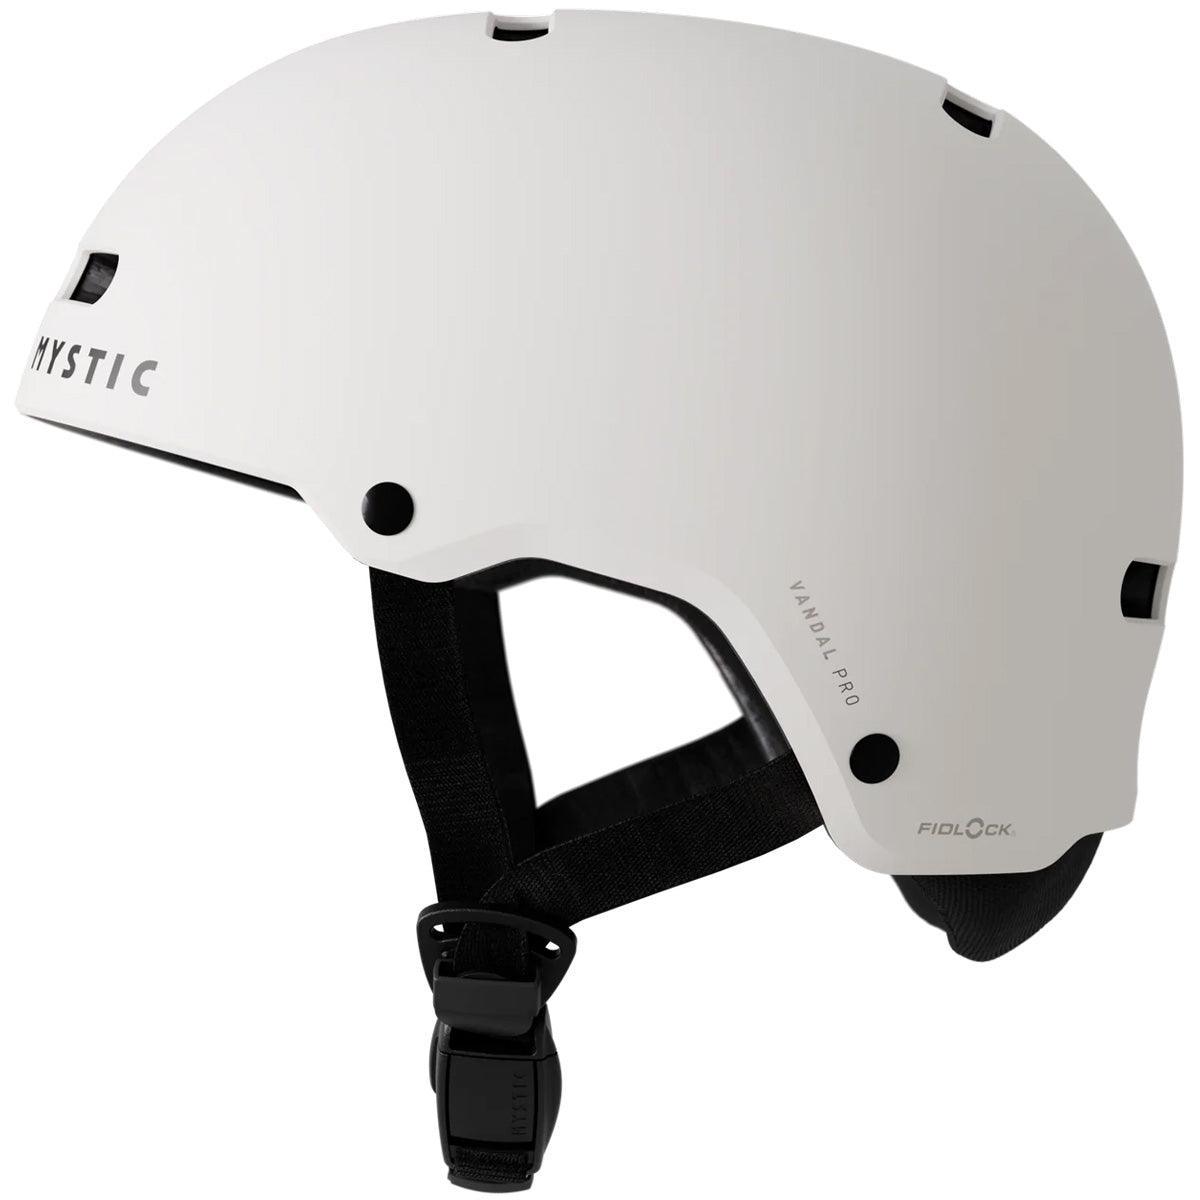 Mystic Vandal Pro Helmet - Powerkiteshop